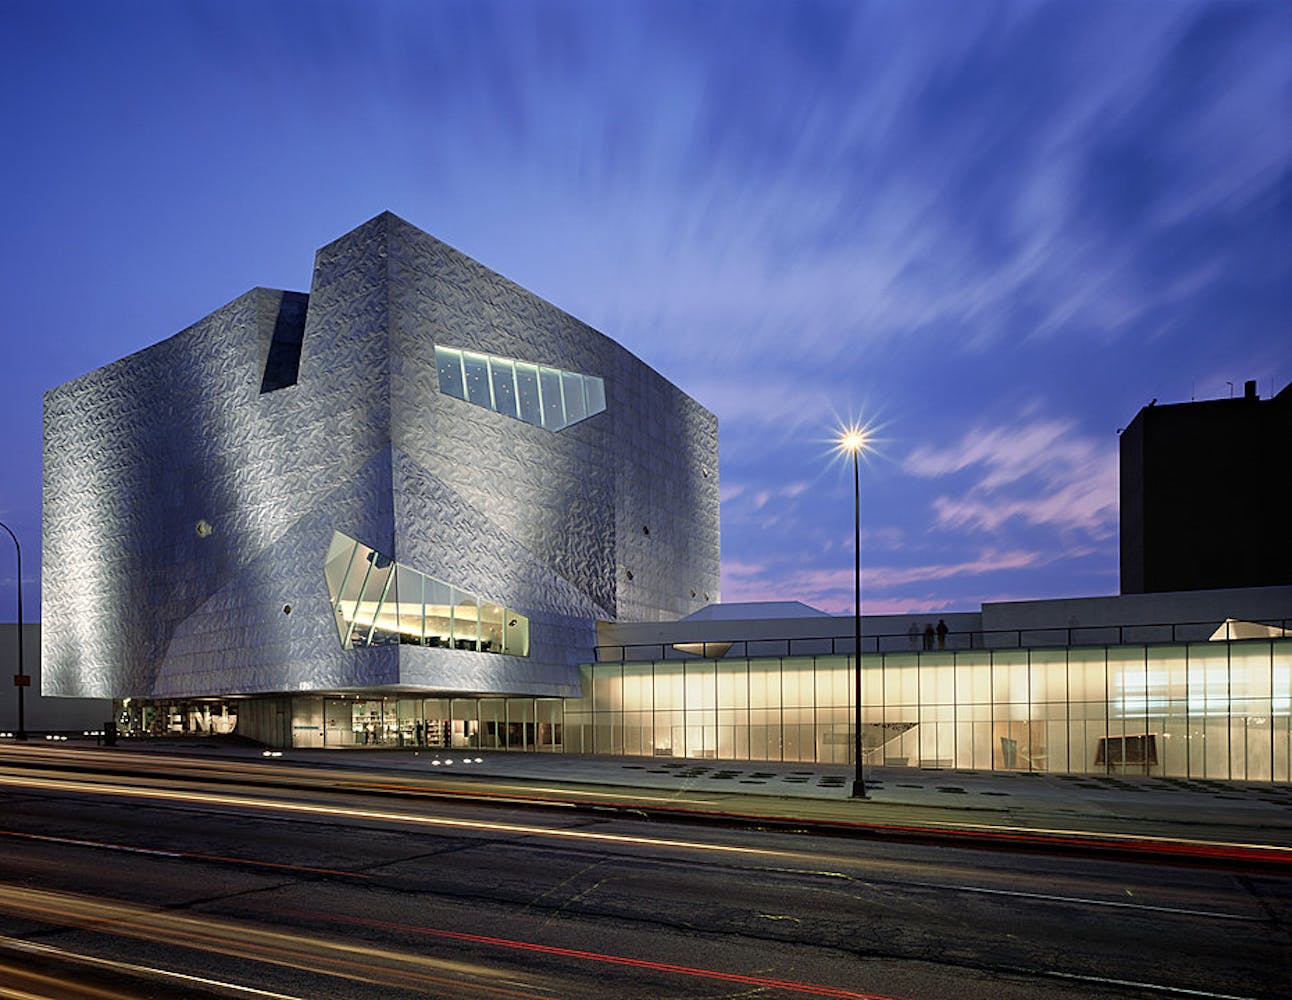 Walker Art Center, Herzog & de Meuron expansion